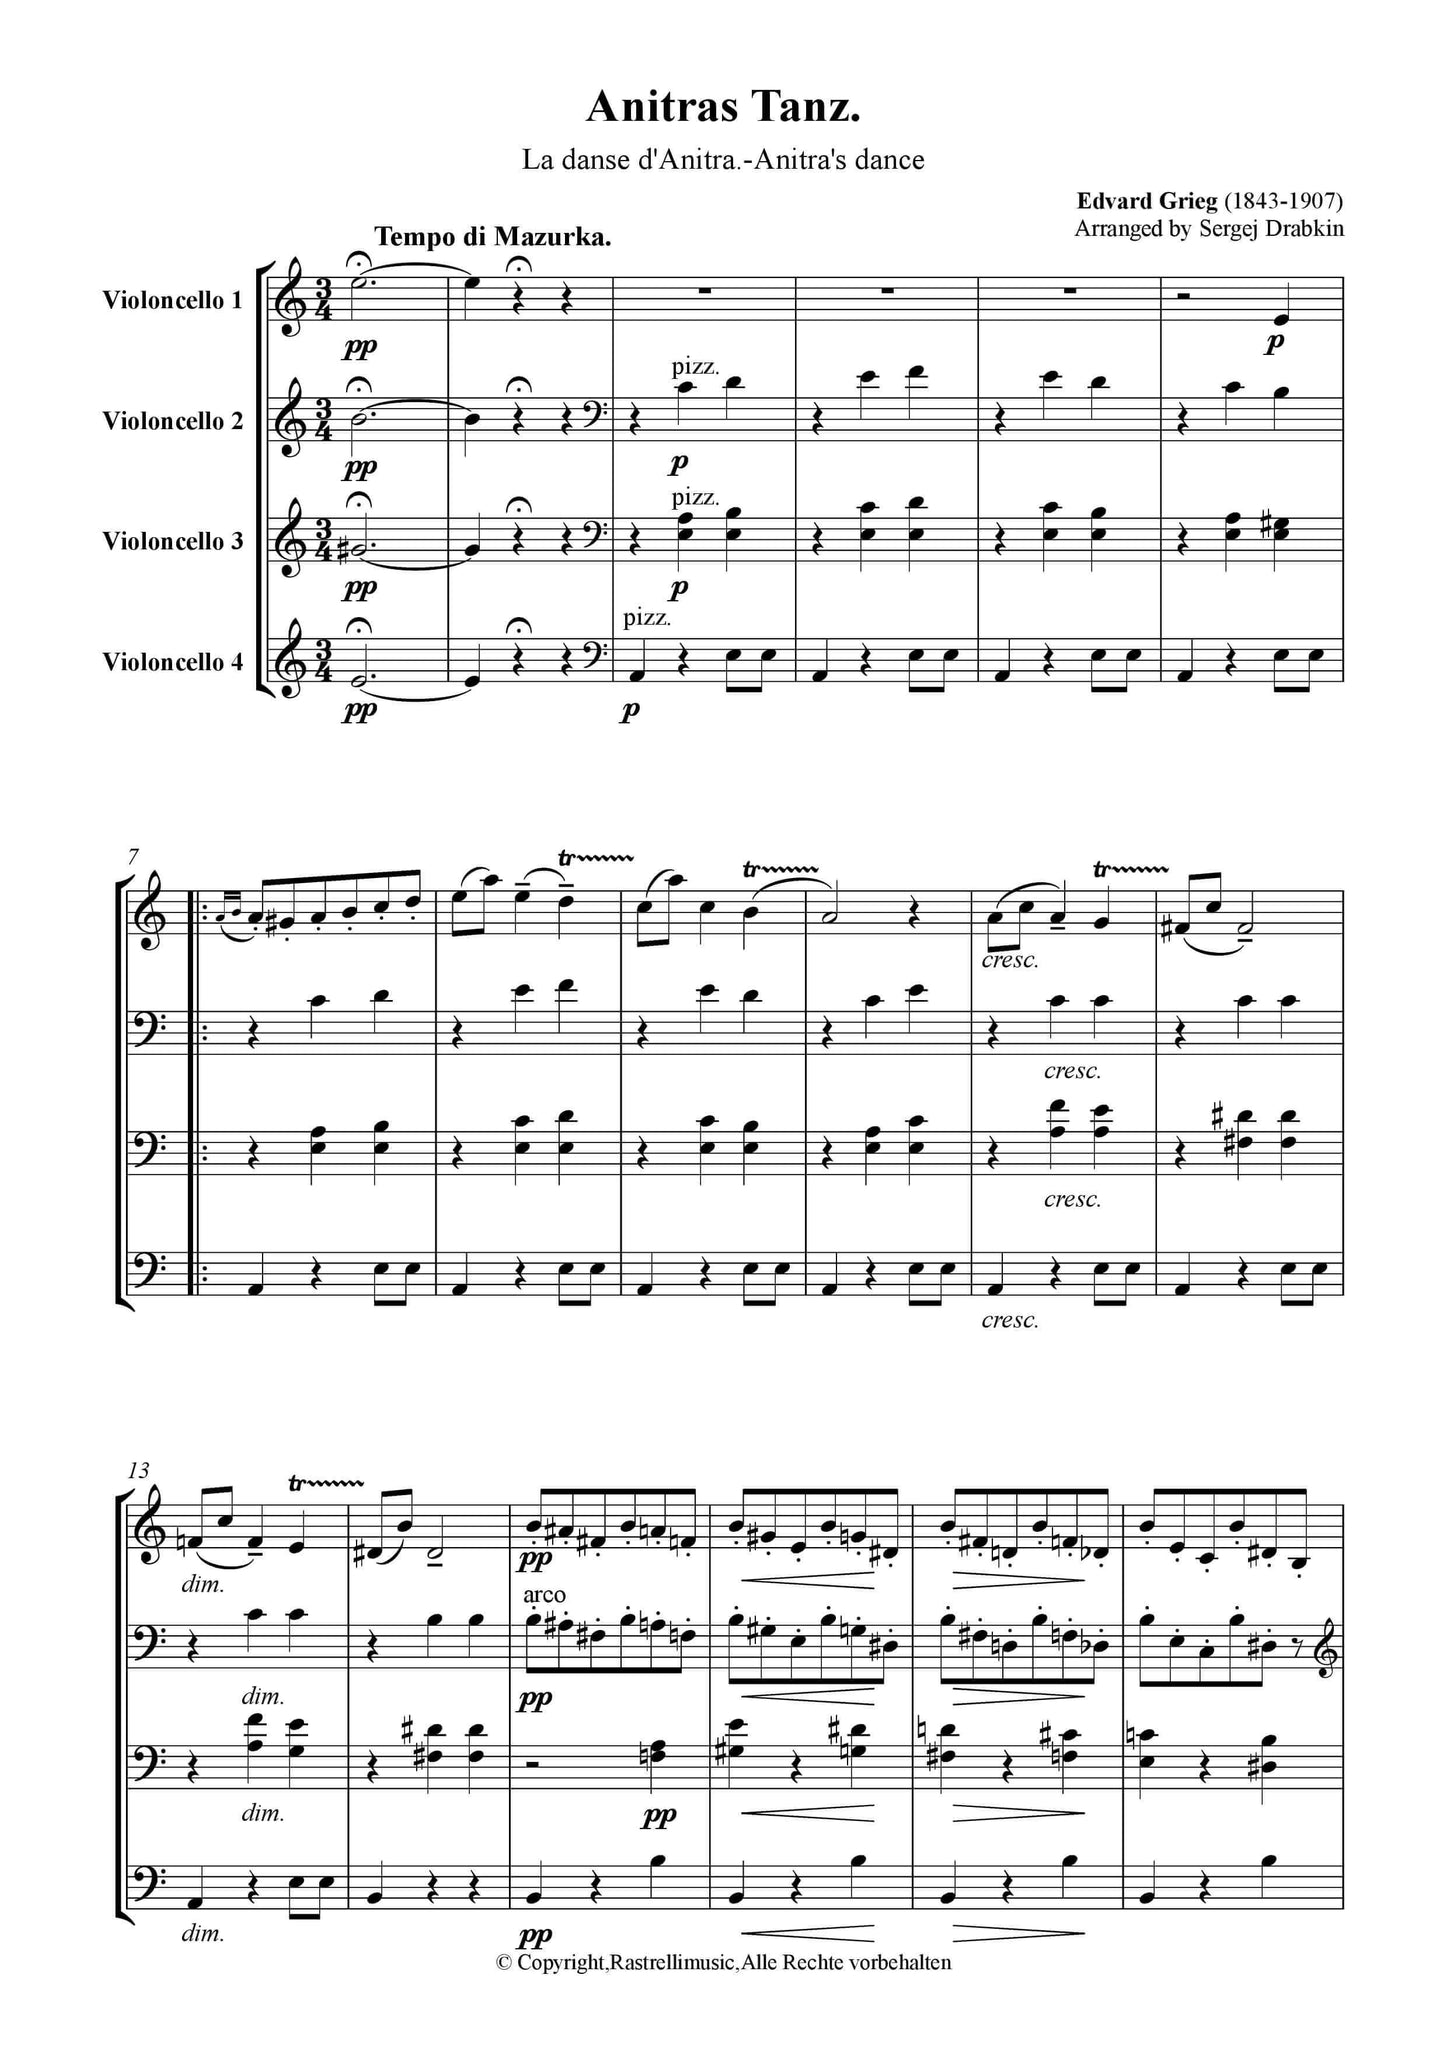 Grieg, Edvard - Anitras Tanz Op.46